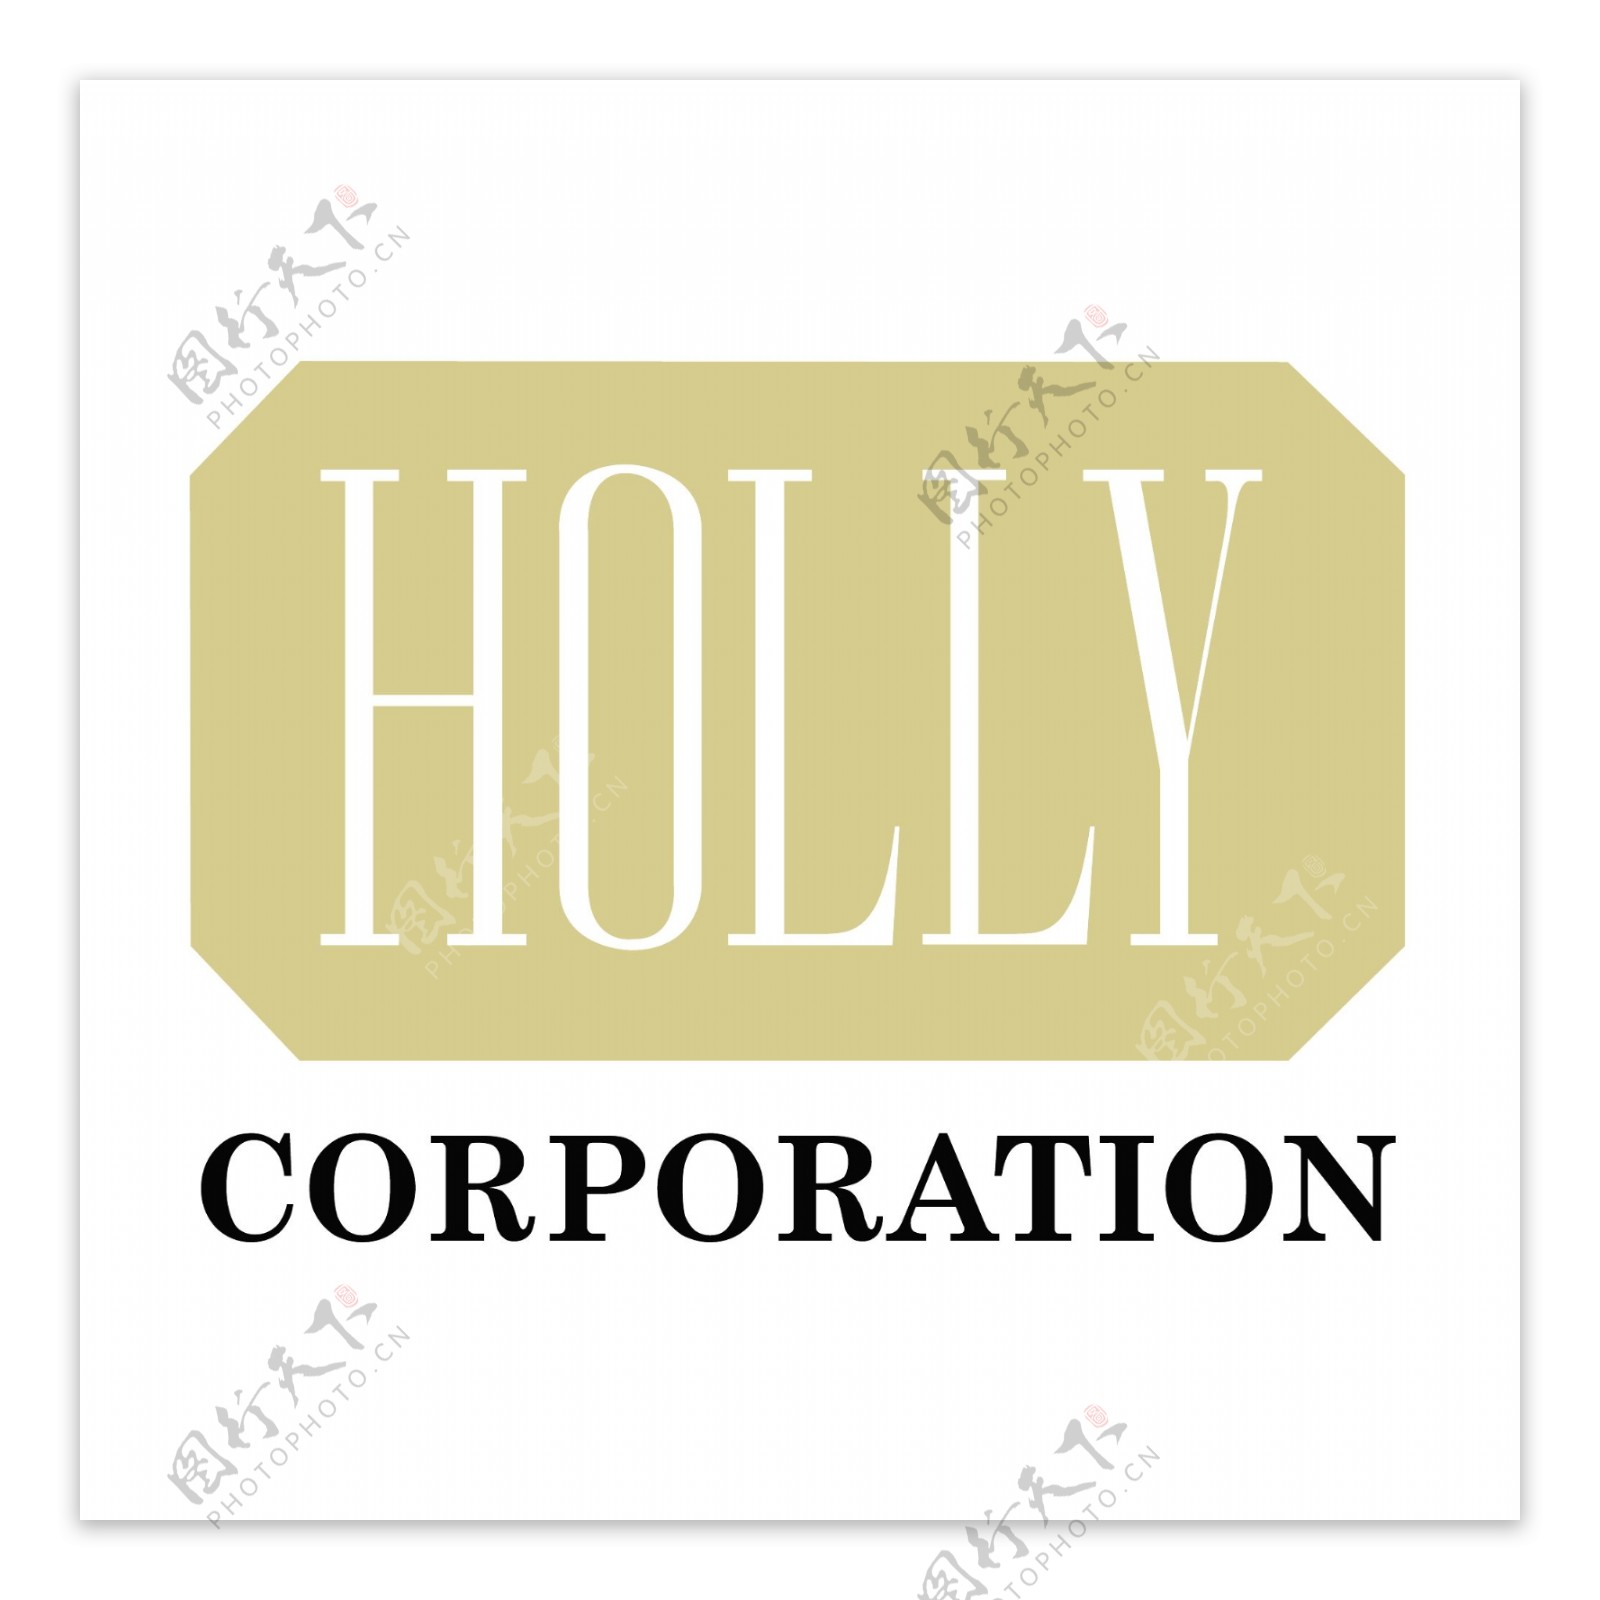 霍莉公司